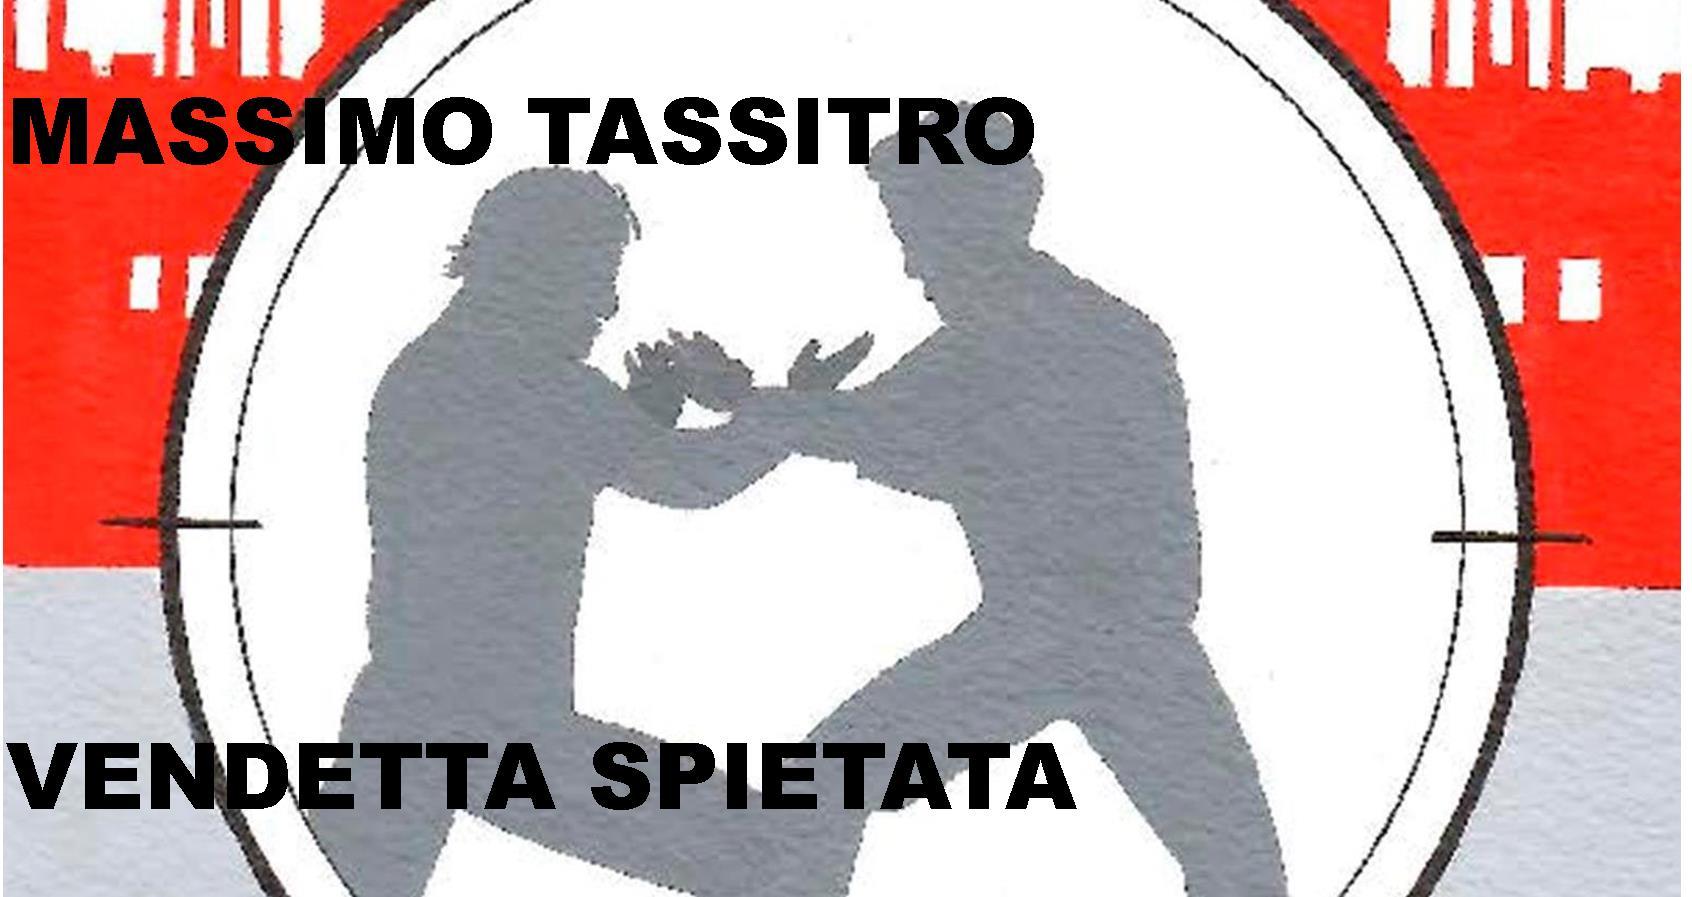 "Vendetta spietata" - si conclude (per ora) la saga di Massimo Tassistro